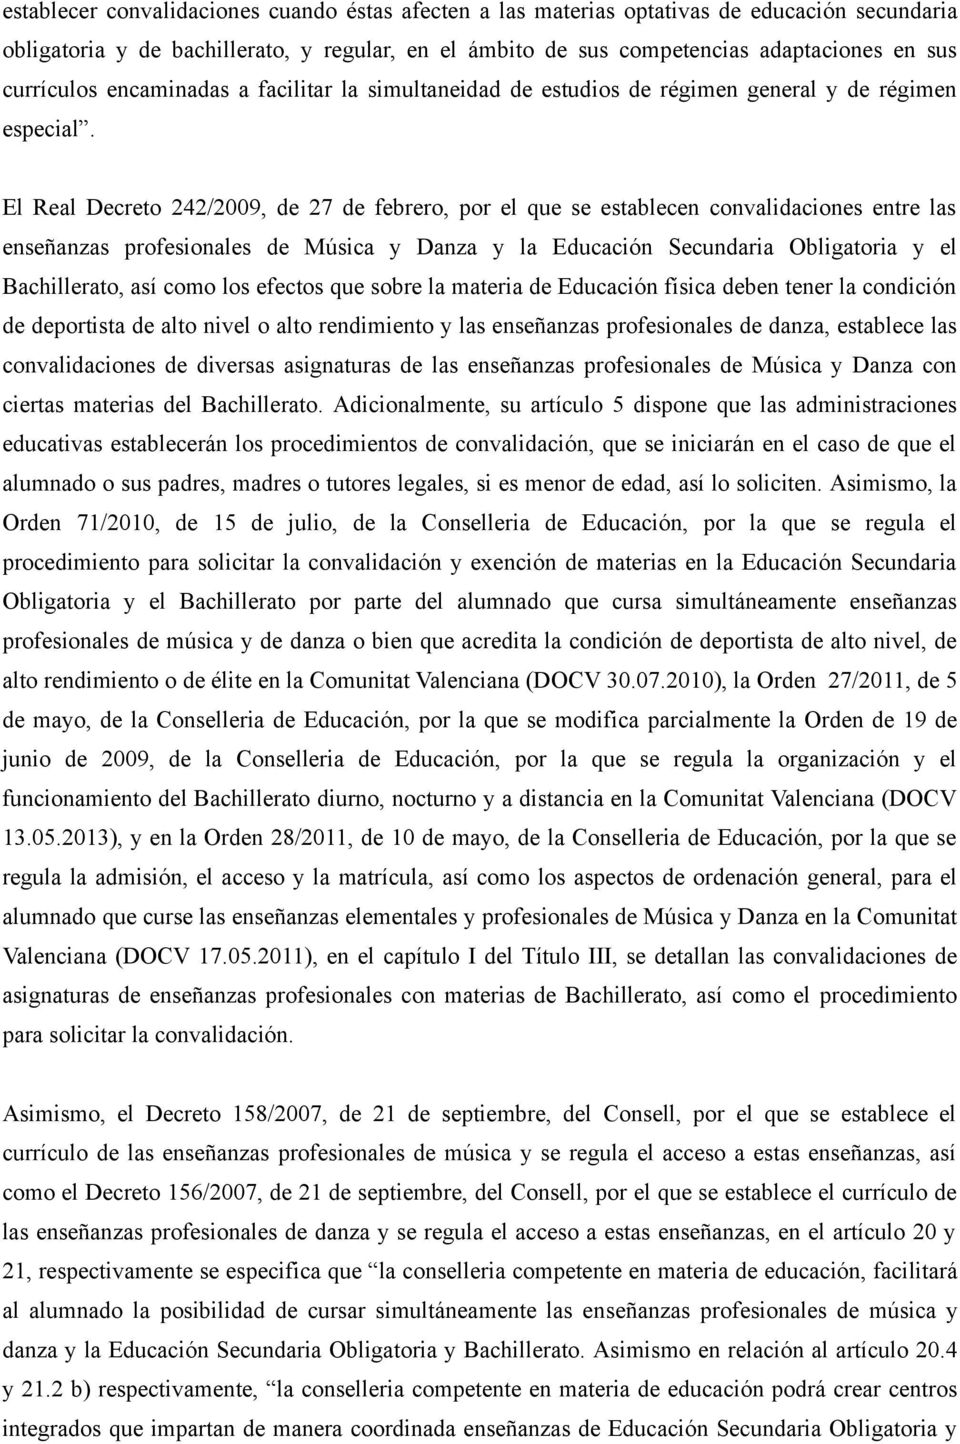 El Real Decreto 242/2009, de 27 de febrero, por el que se establecen convalidaciones entre las enseñanzas profesionales de Música y Danza y la Educación Secundaria Obligatoria y el Bachillerato, así